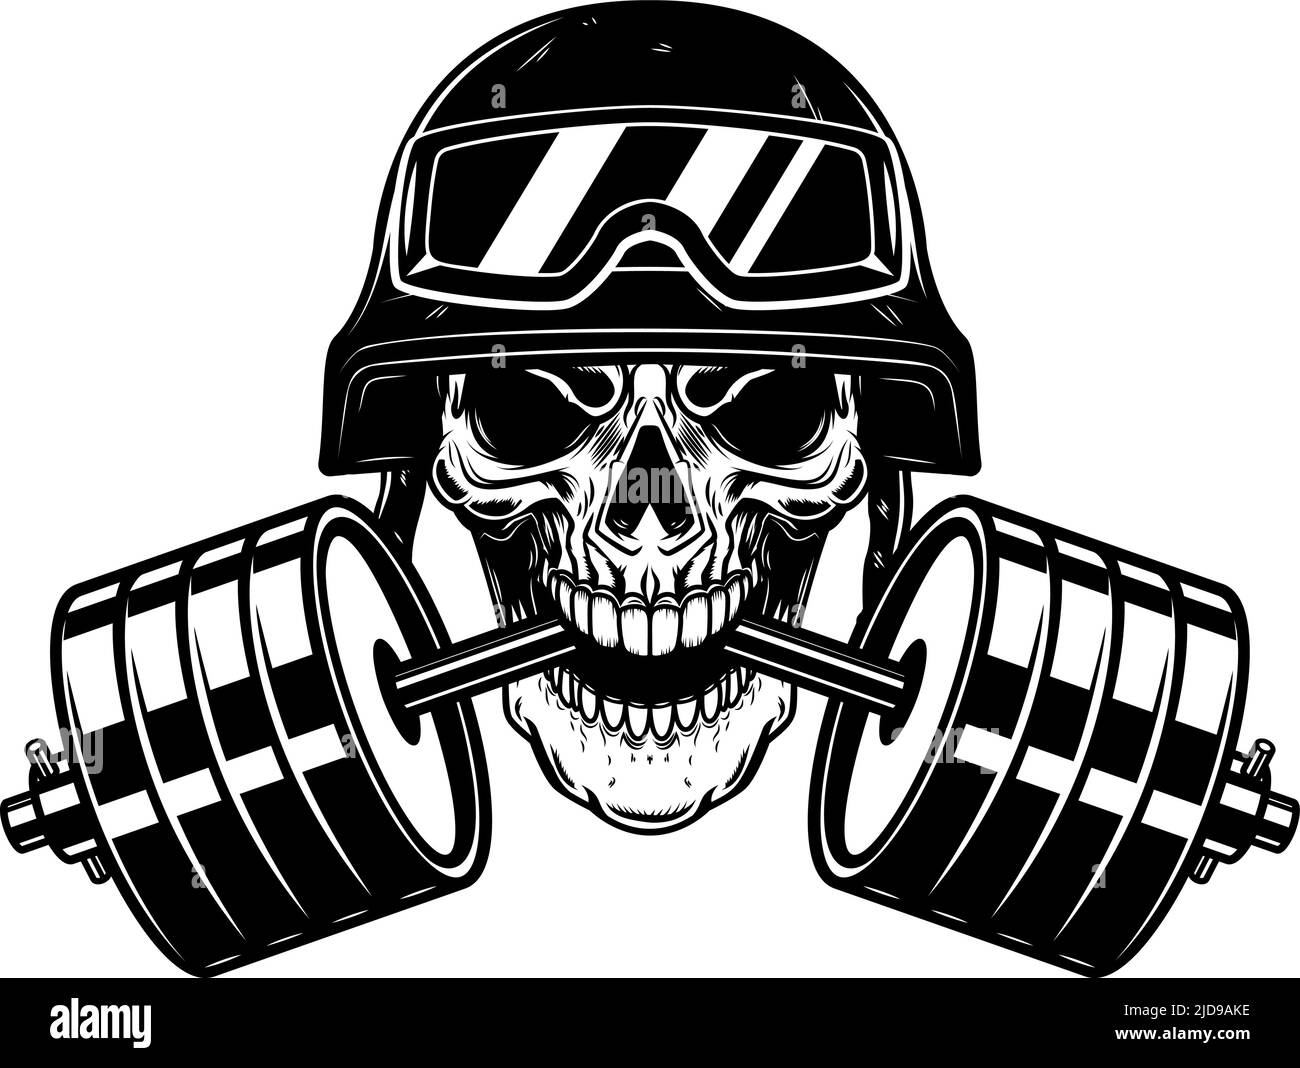 Soldat Schädel mit Langhantel in den Zähnen. Gestaltungselement für Logo, Emblem, Schild, Poster, T-Shirt. Vektorgrafik Stock Vektor